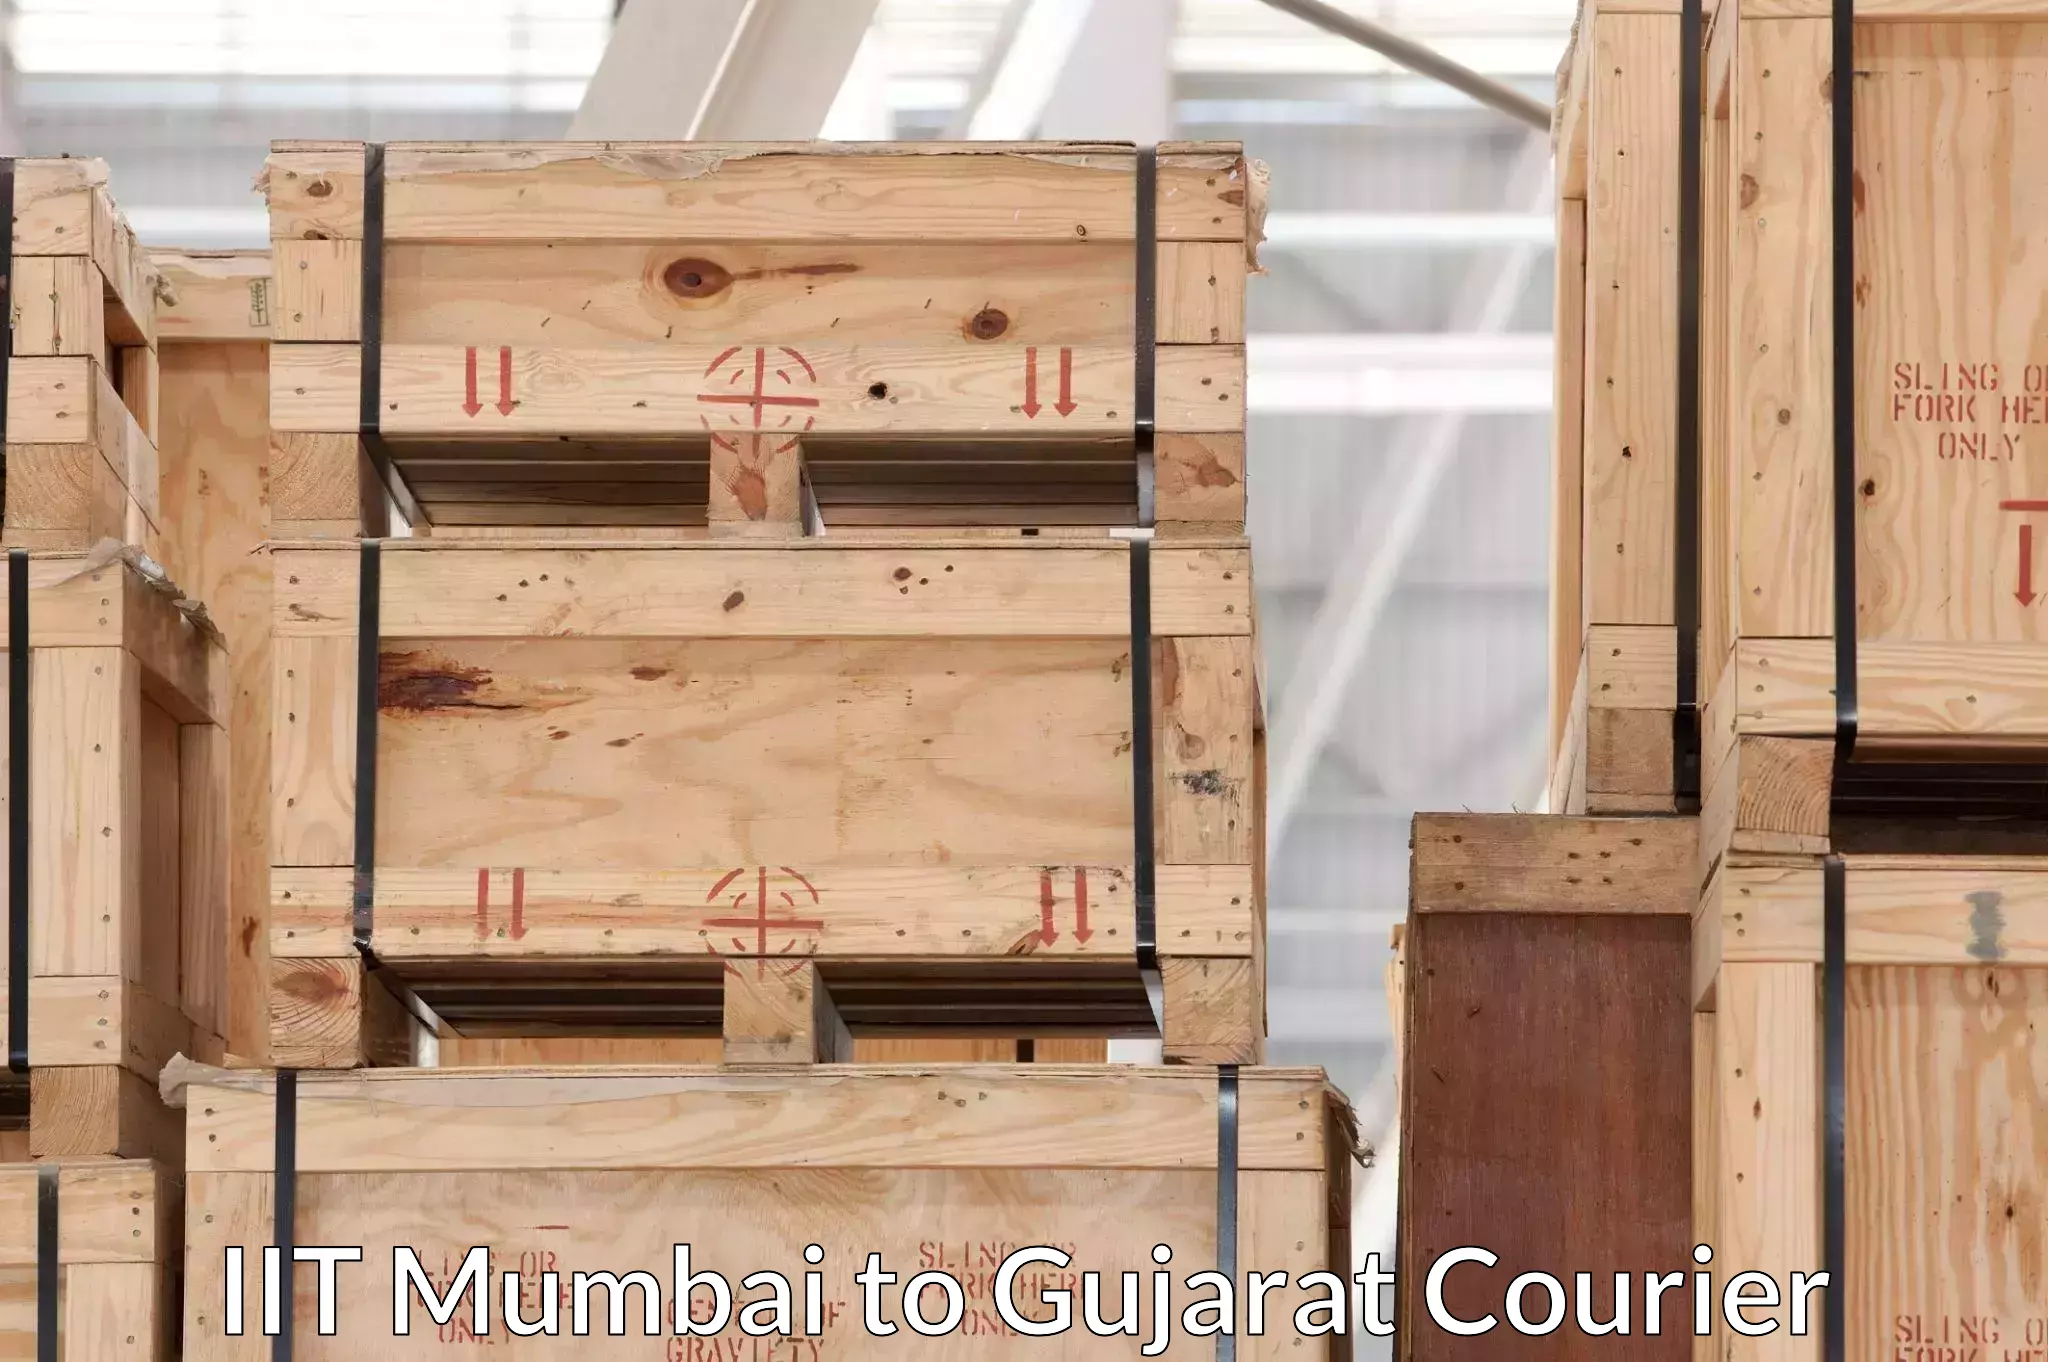 Safe home goods transport IIT Mumbai to Gujarat